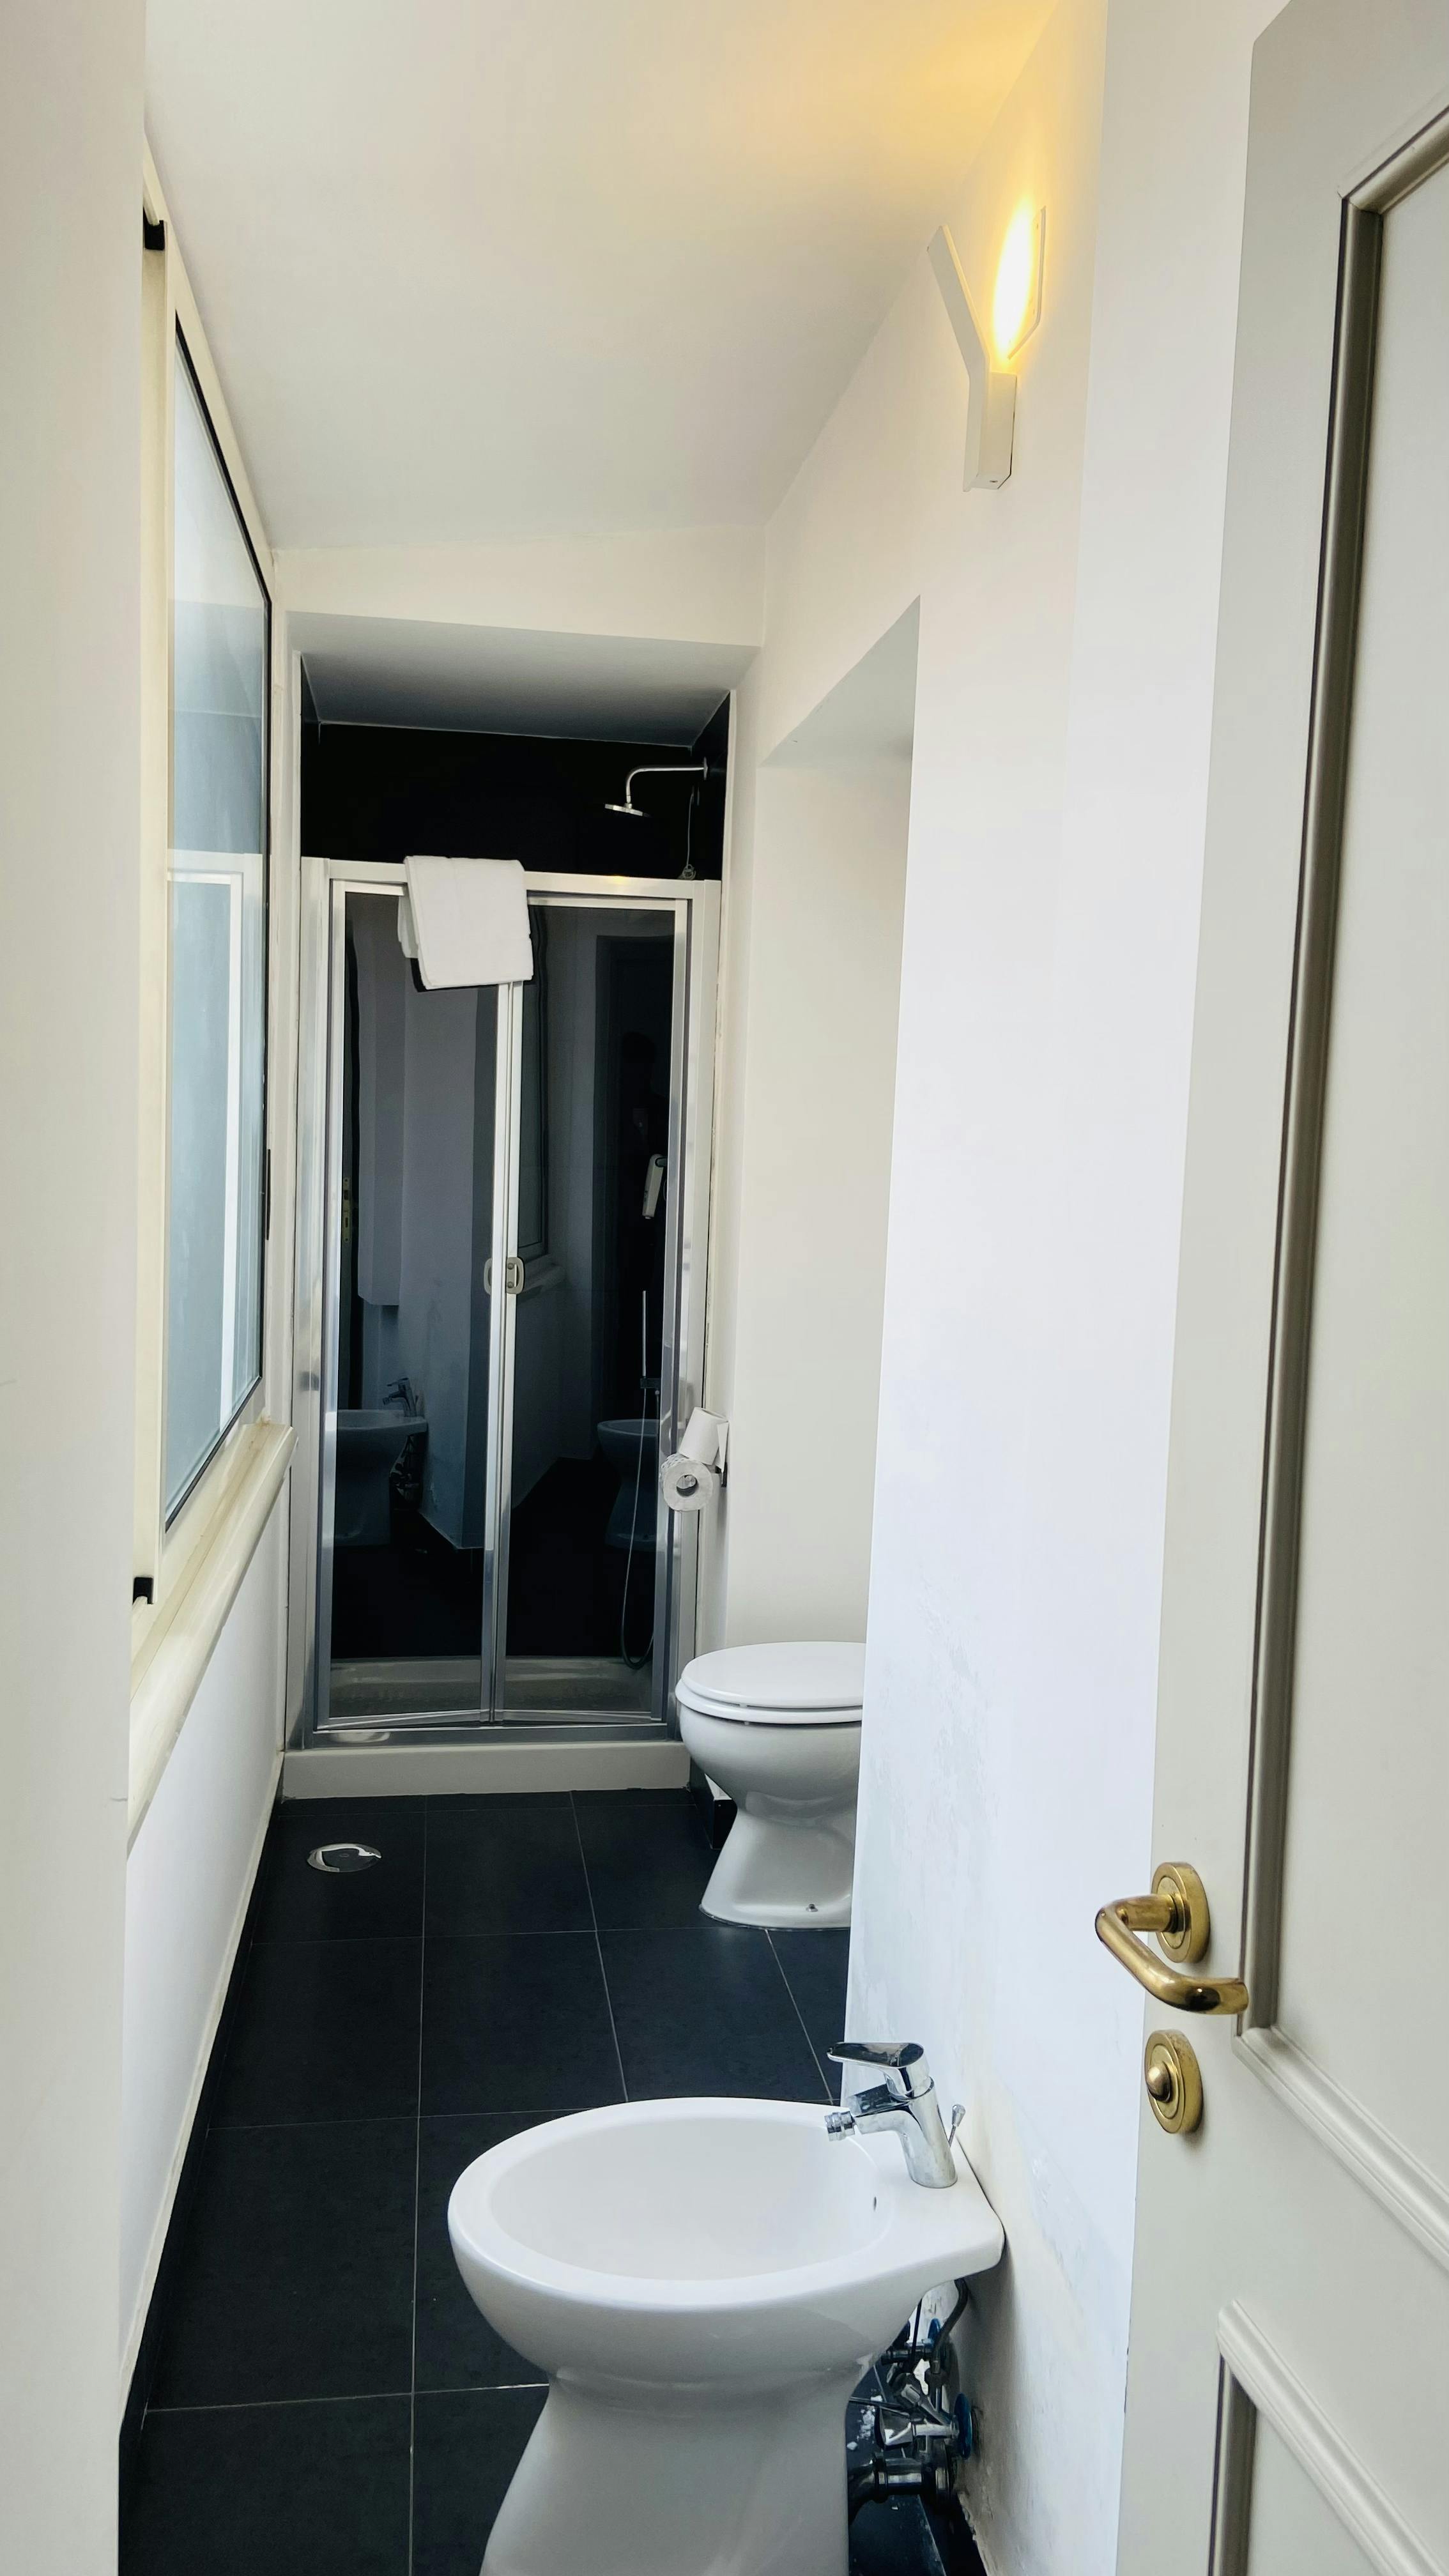 Bathroom Of Double Room